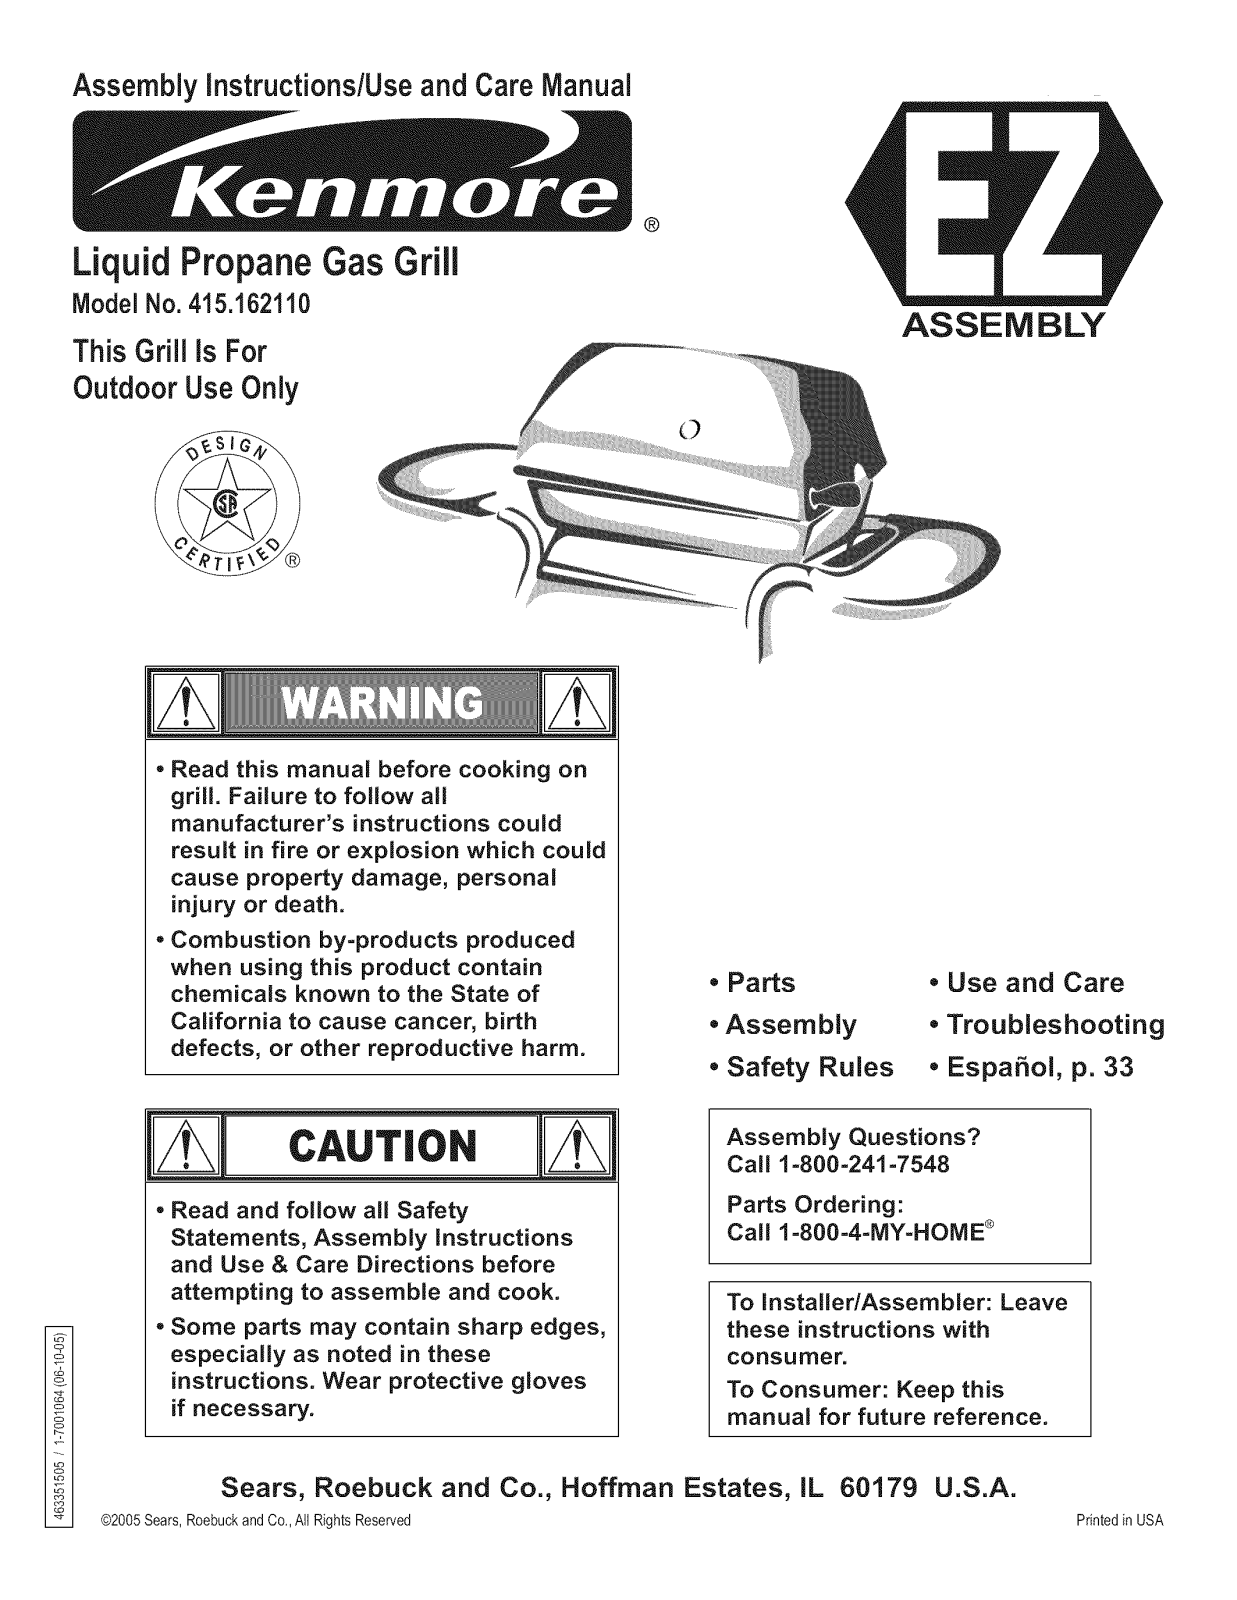 Kenmore 463351505, 415162110 Owner’s Manual